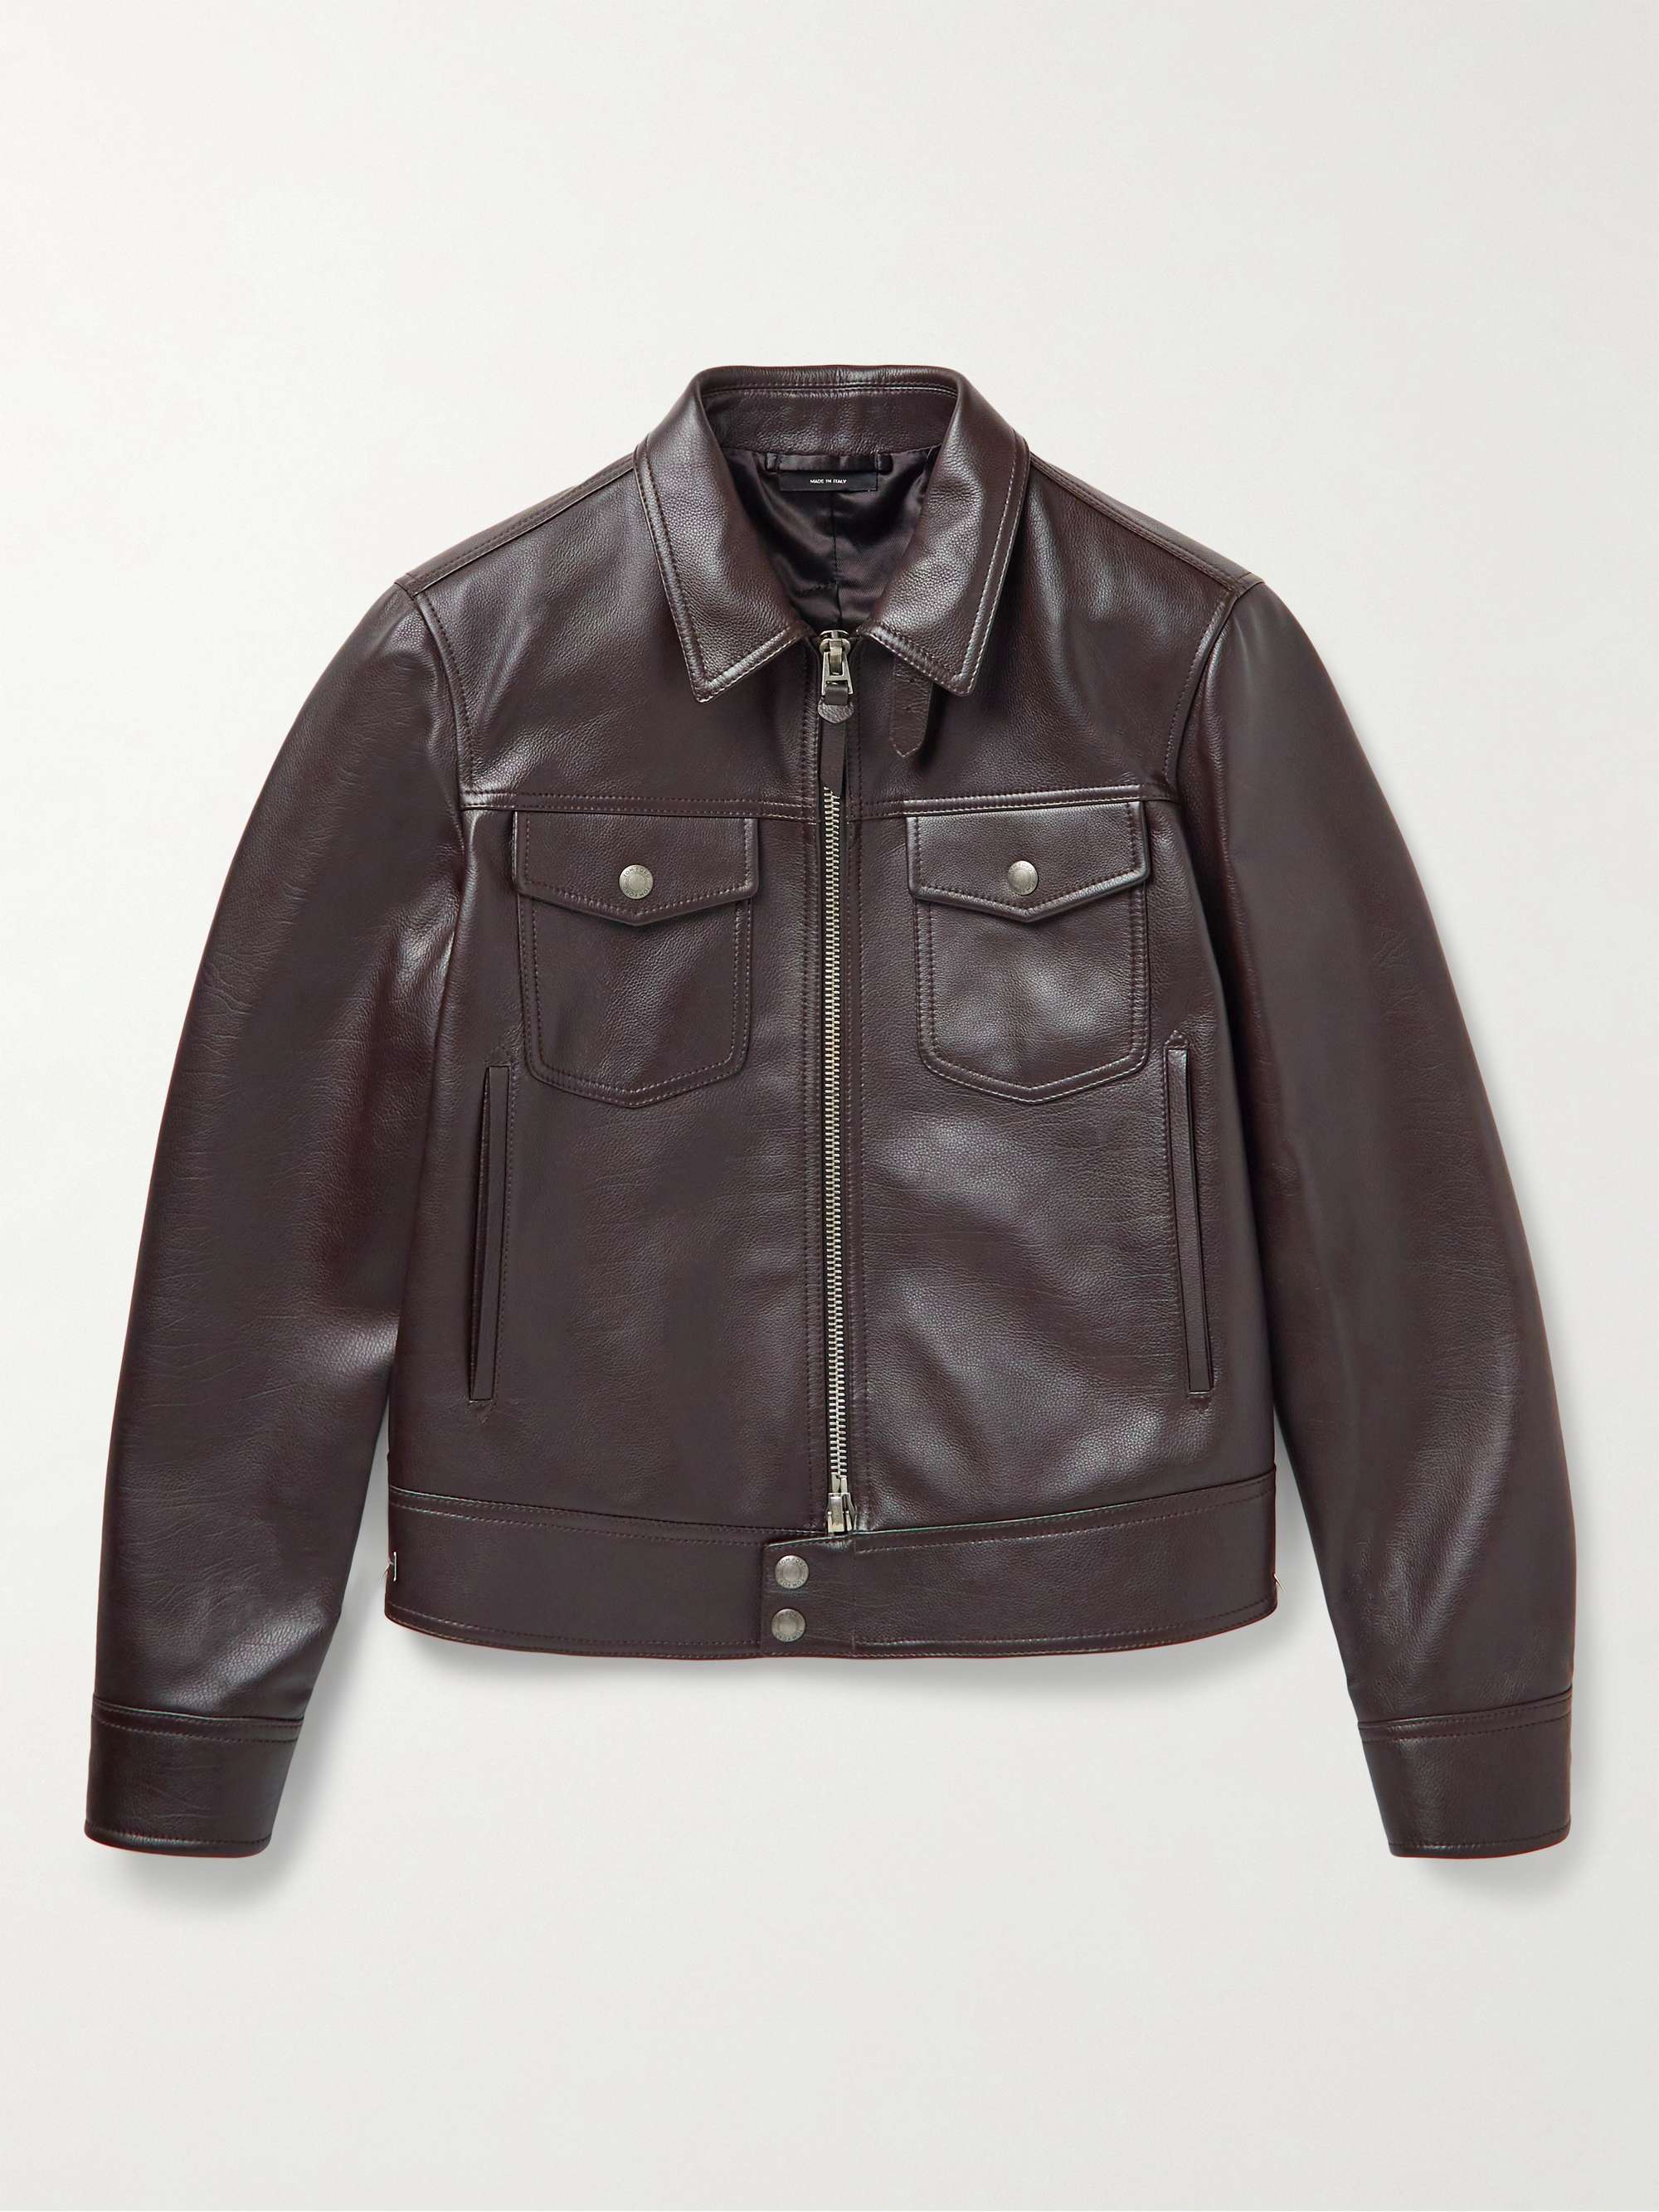 TOM FORD Full-Grain Leather Blouson Jacket